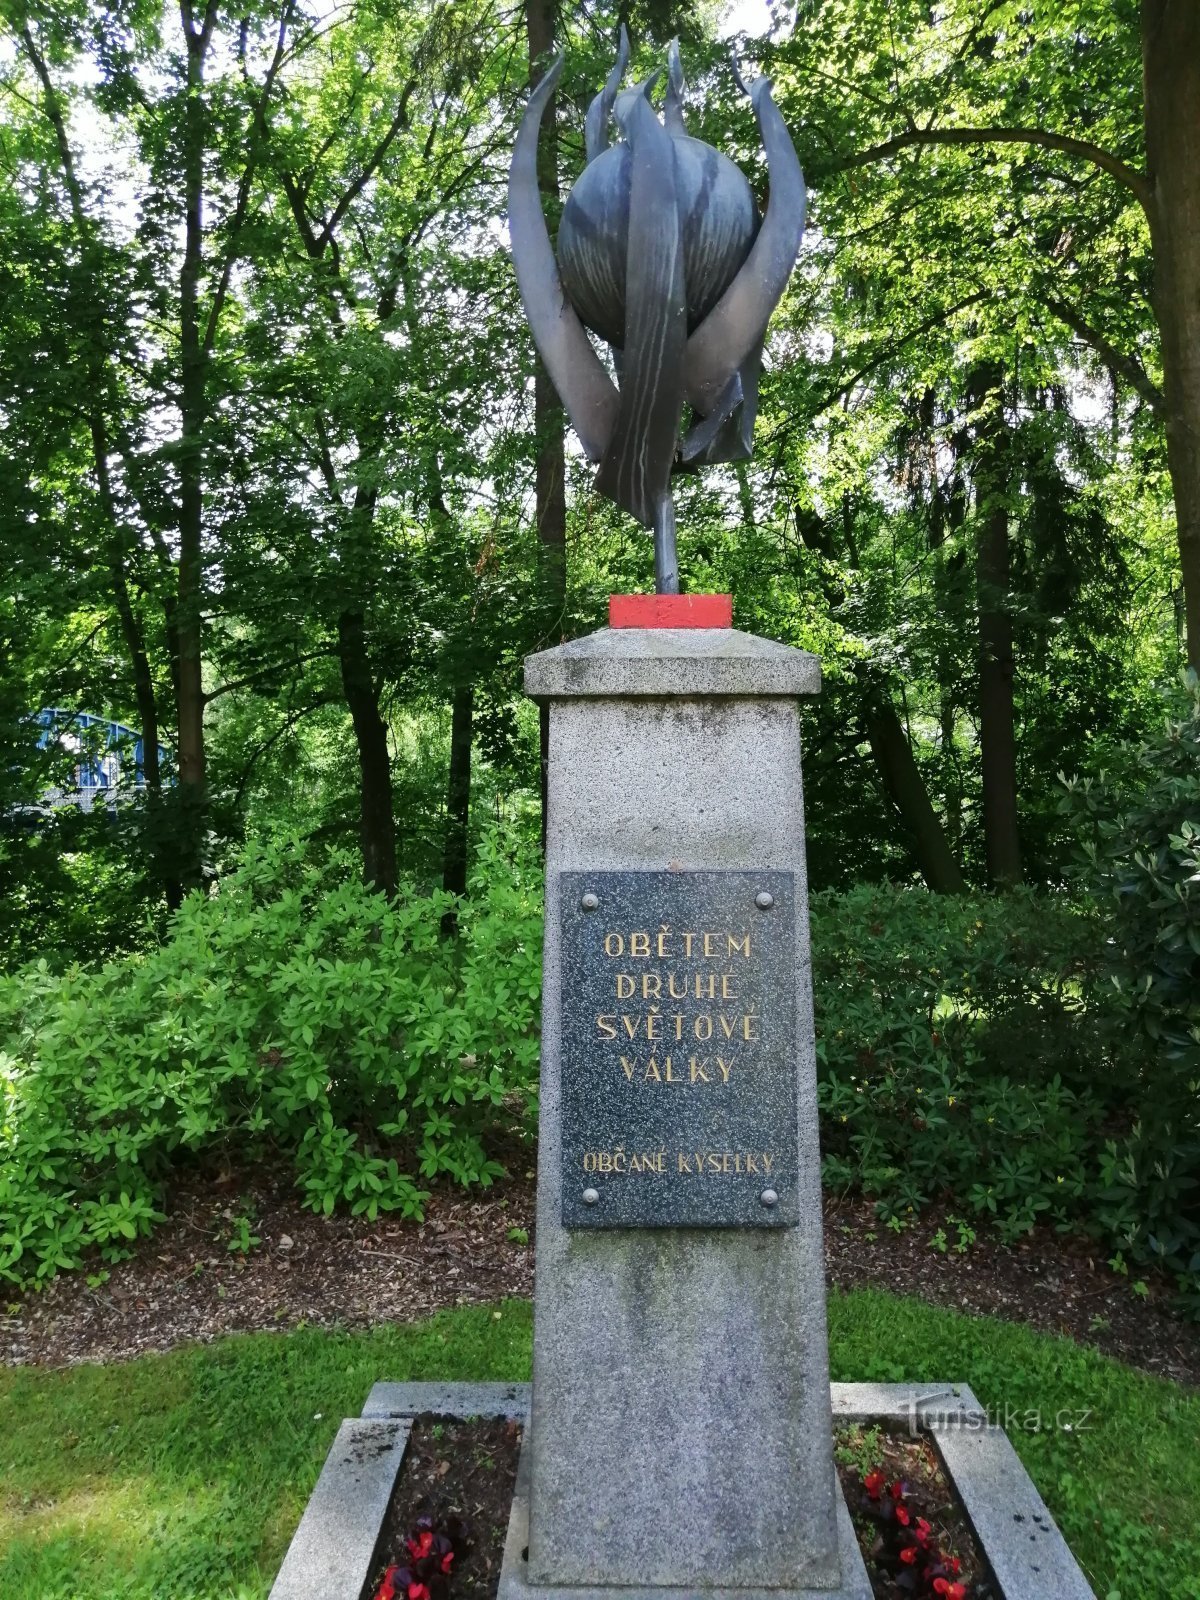 Monumentul Victimelor celui de-al Doilea Război Mondial - Kyselka